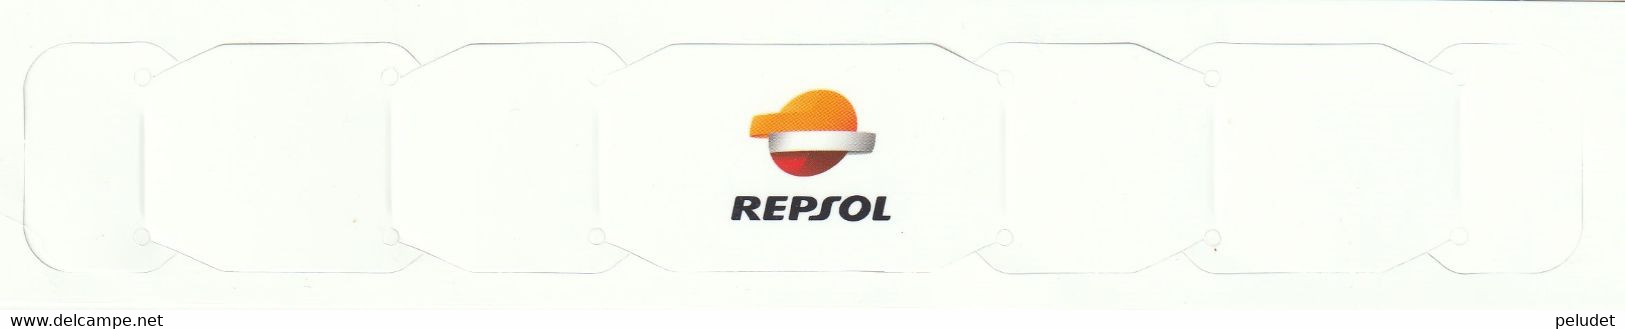 REPSOL - Sujeta Mascarilla De Cartón, Porte-masque En Carton, Cardboard Mask Holder - Supplies And Equipment